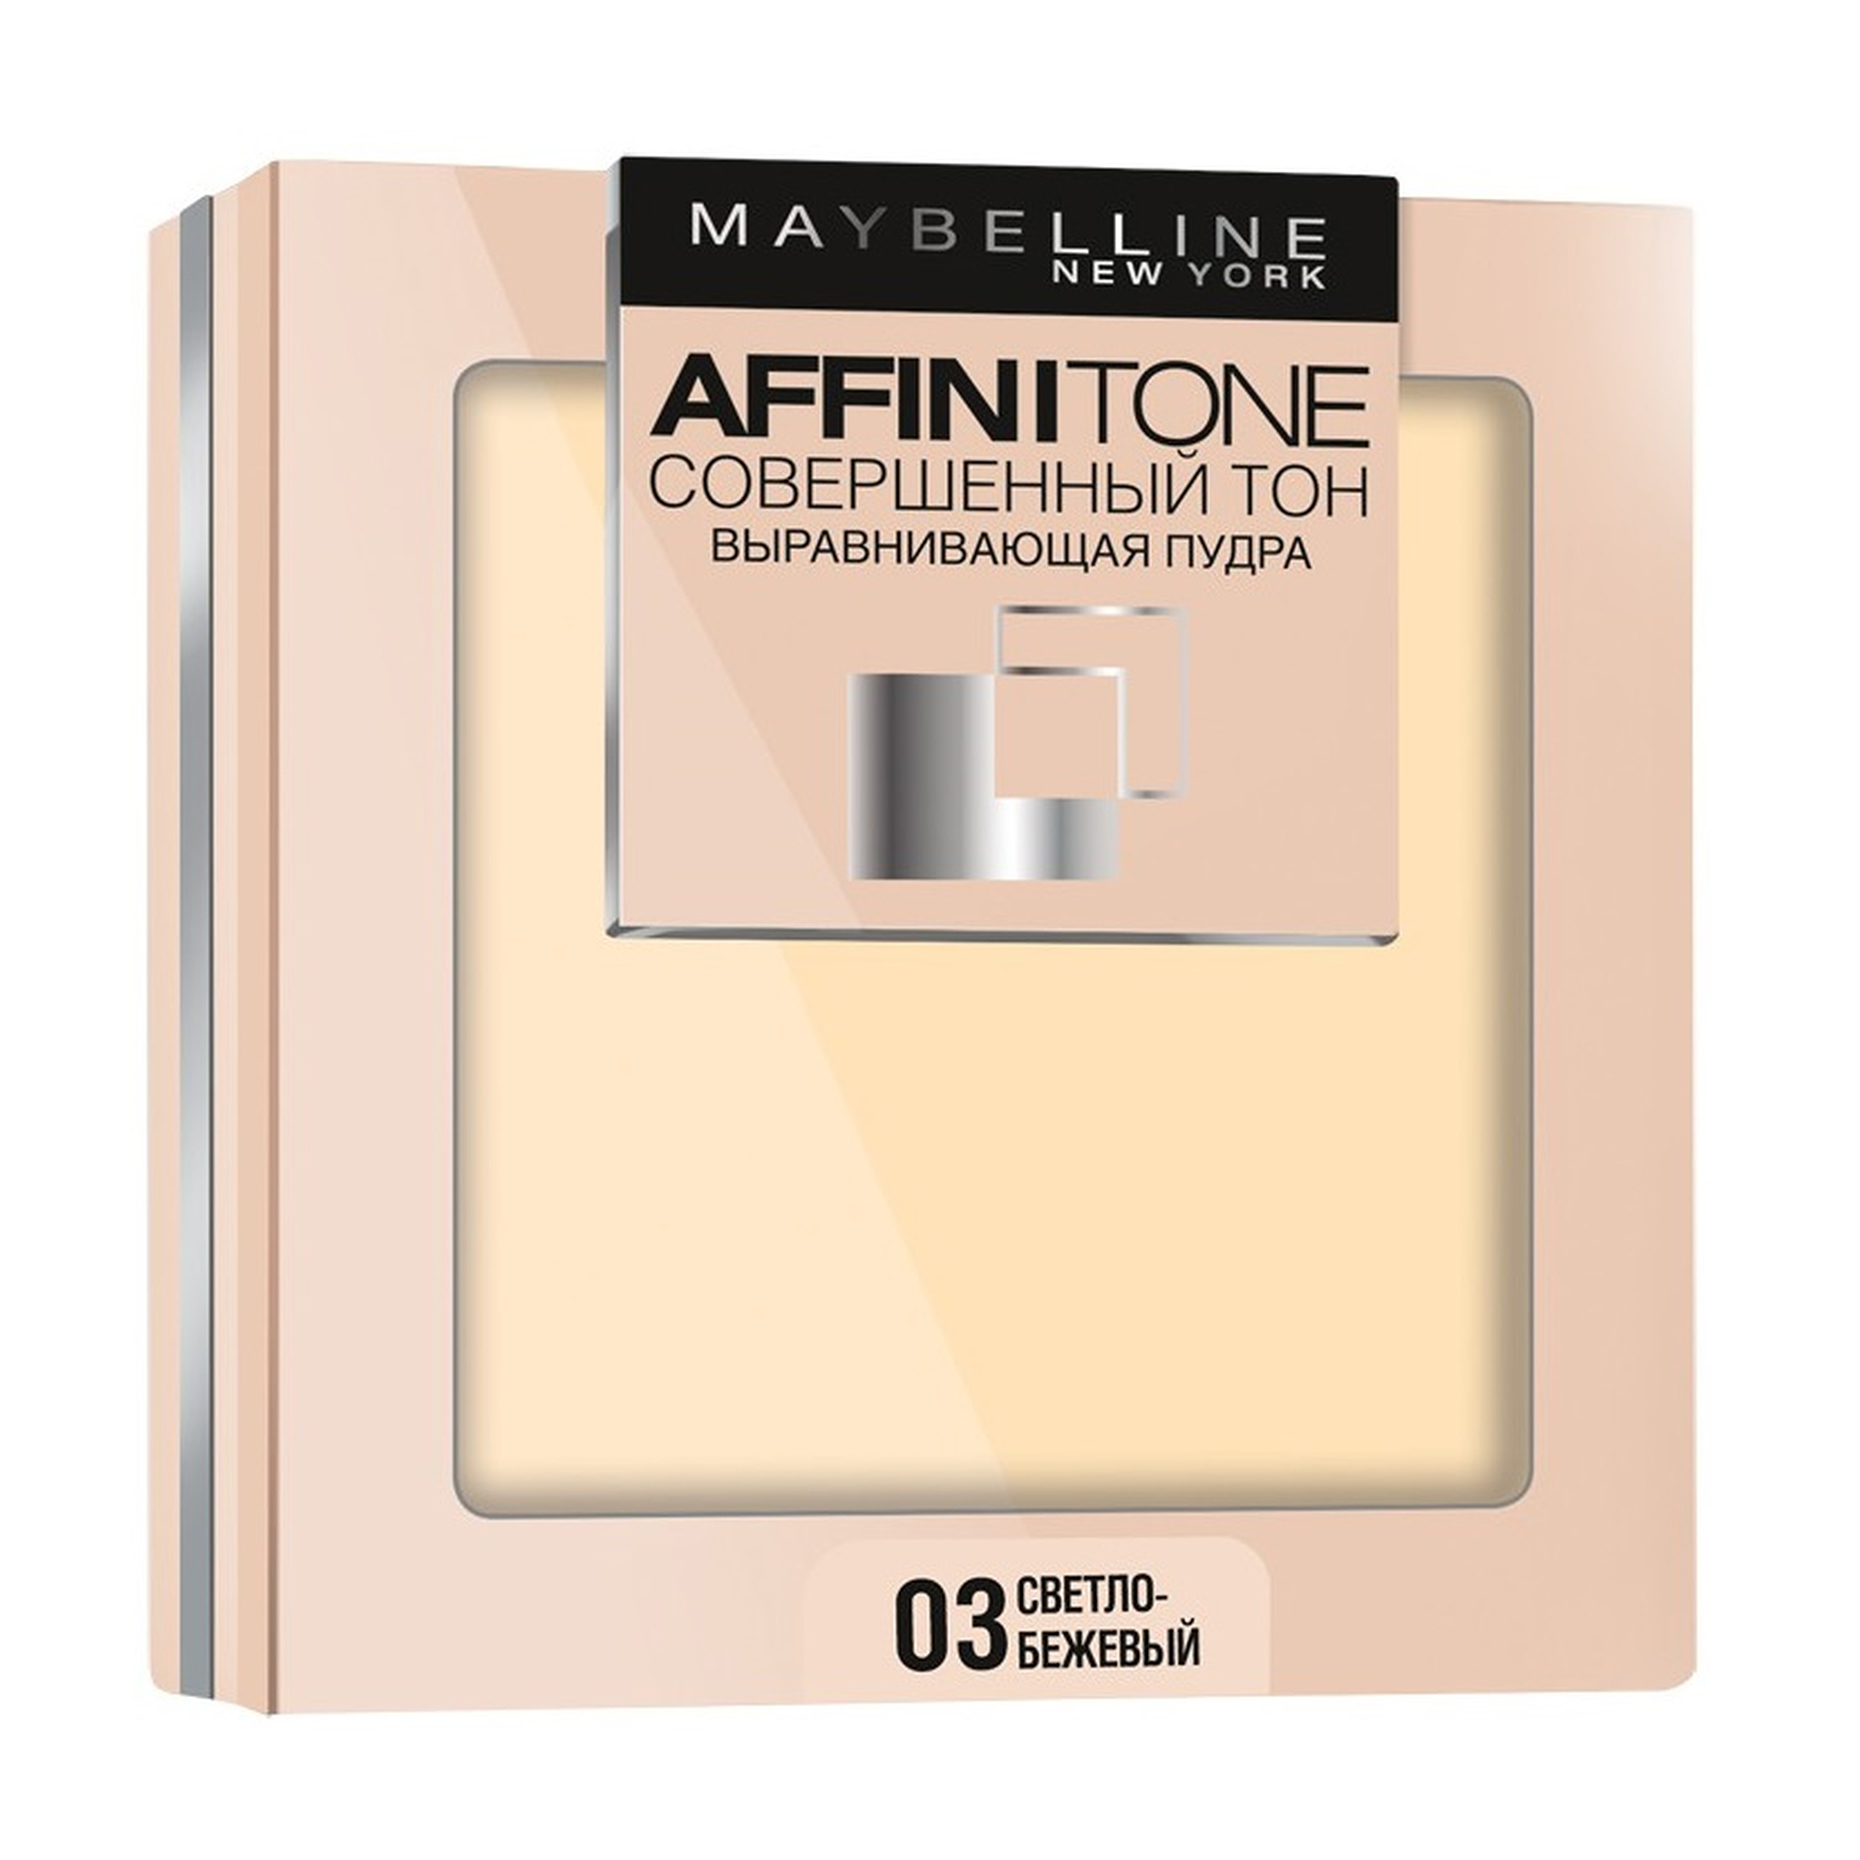 Пудра Maybelline New York Affinitone 03 светло-бежевый maybelline new york тональный крем для лица affinitone выравнивающий и увлажняющий